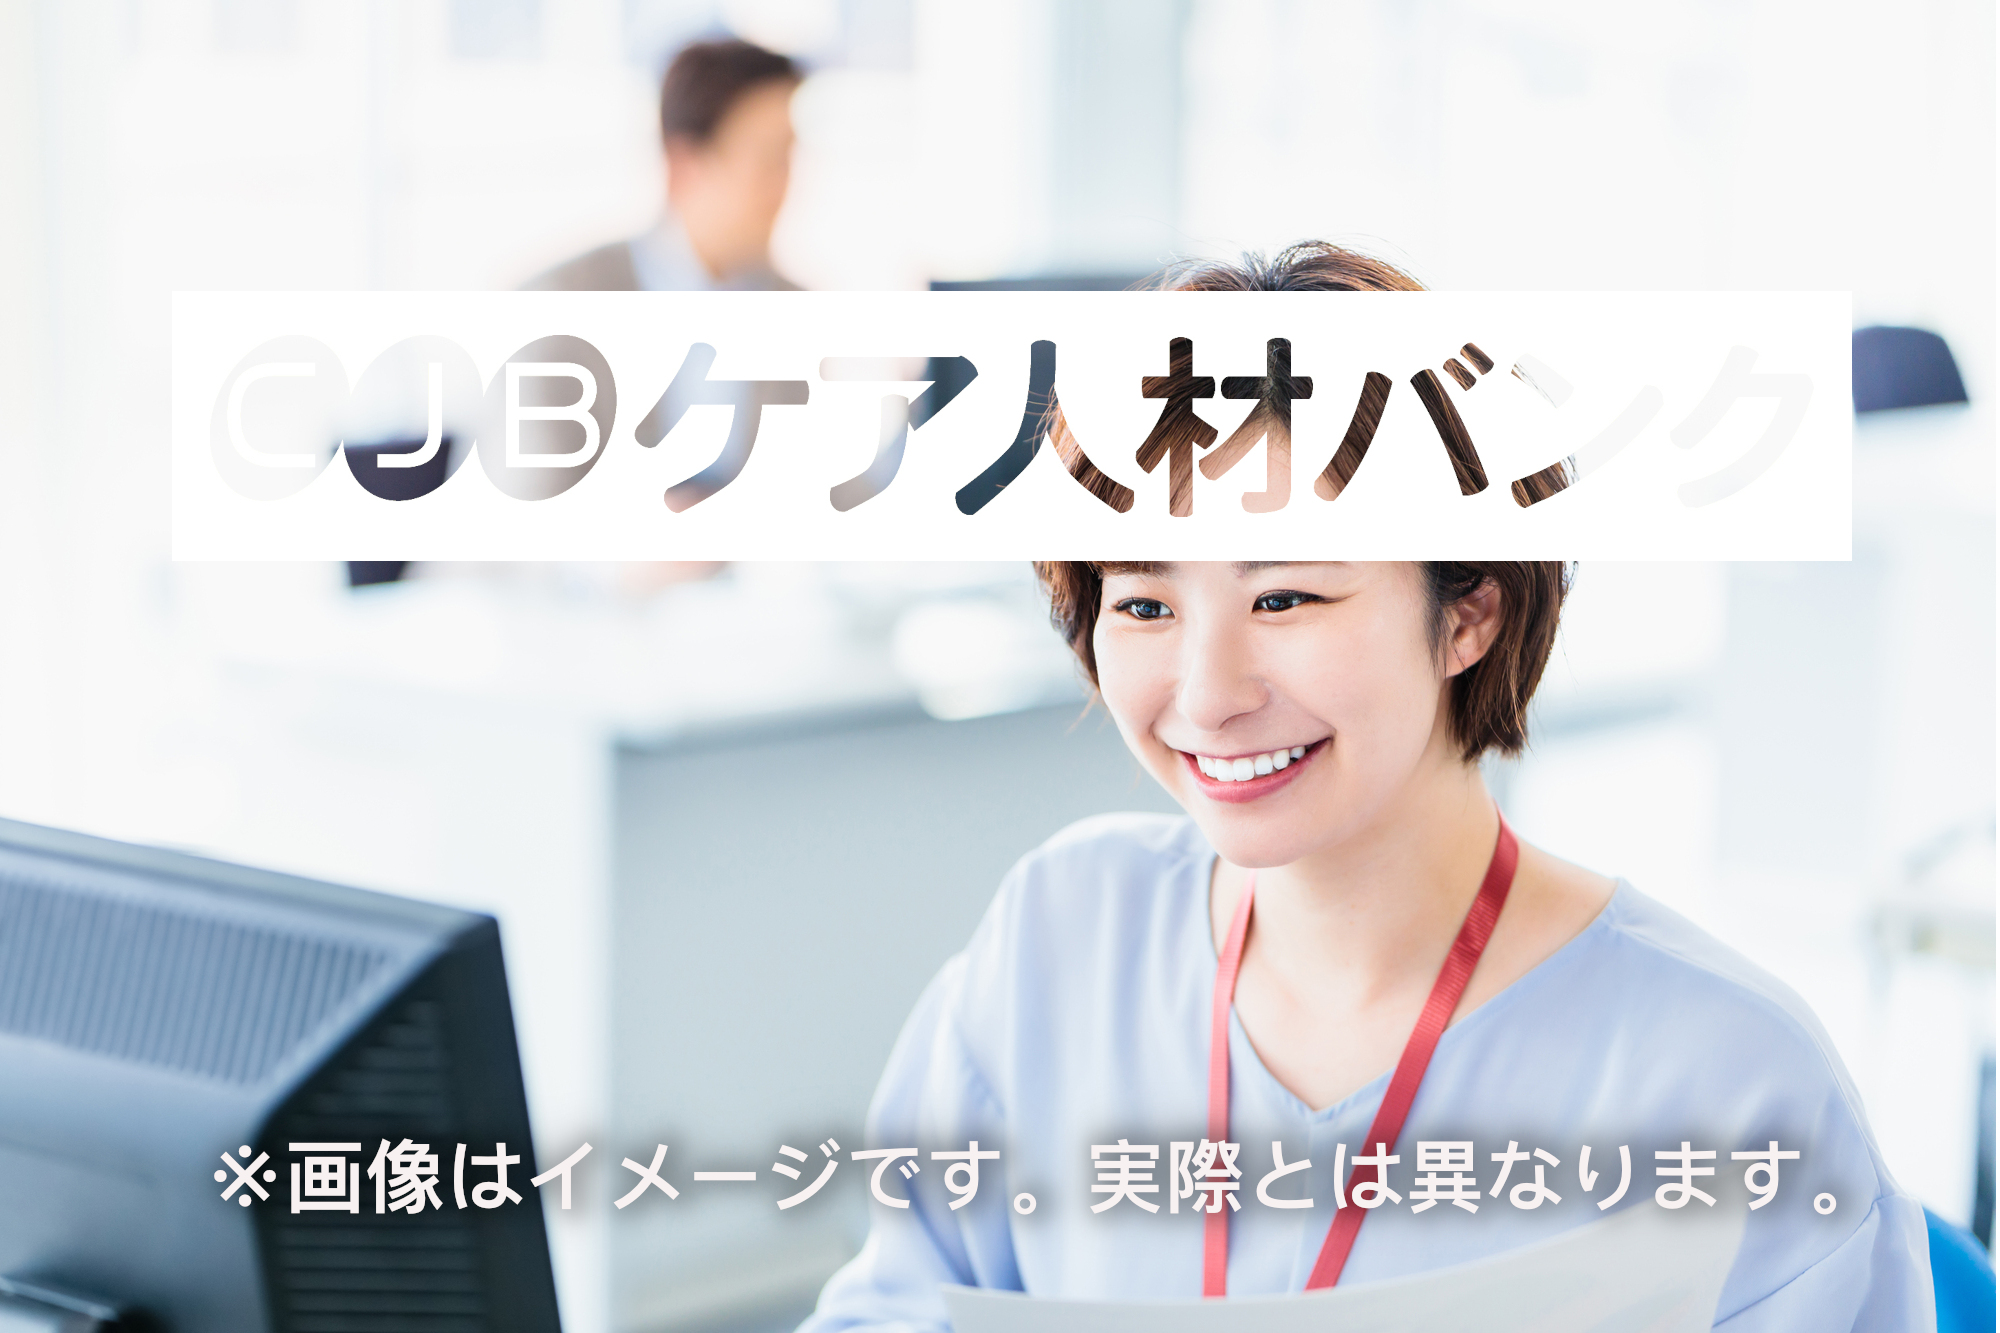 富山県富山市・特養・常勤 の非公開求人情報(C01545)のイメージ画像